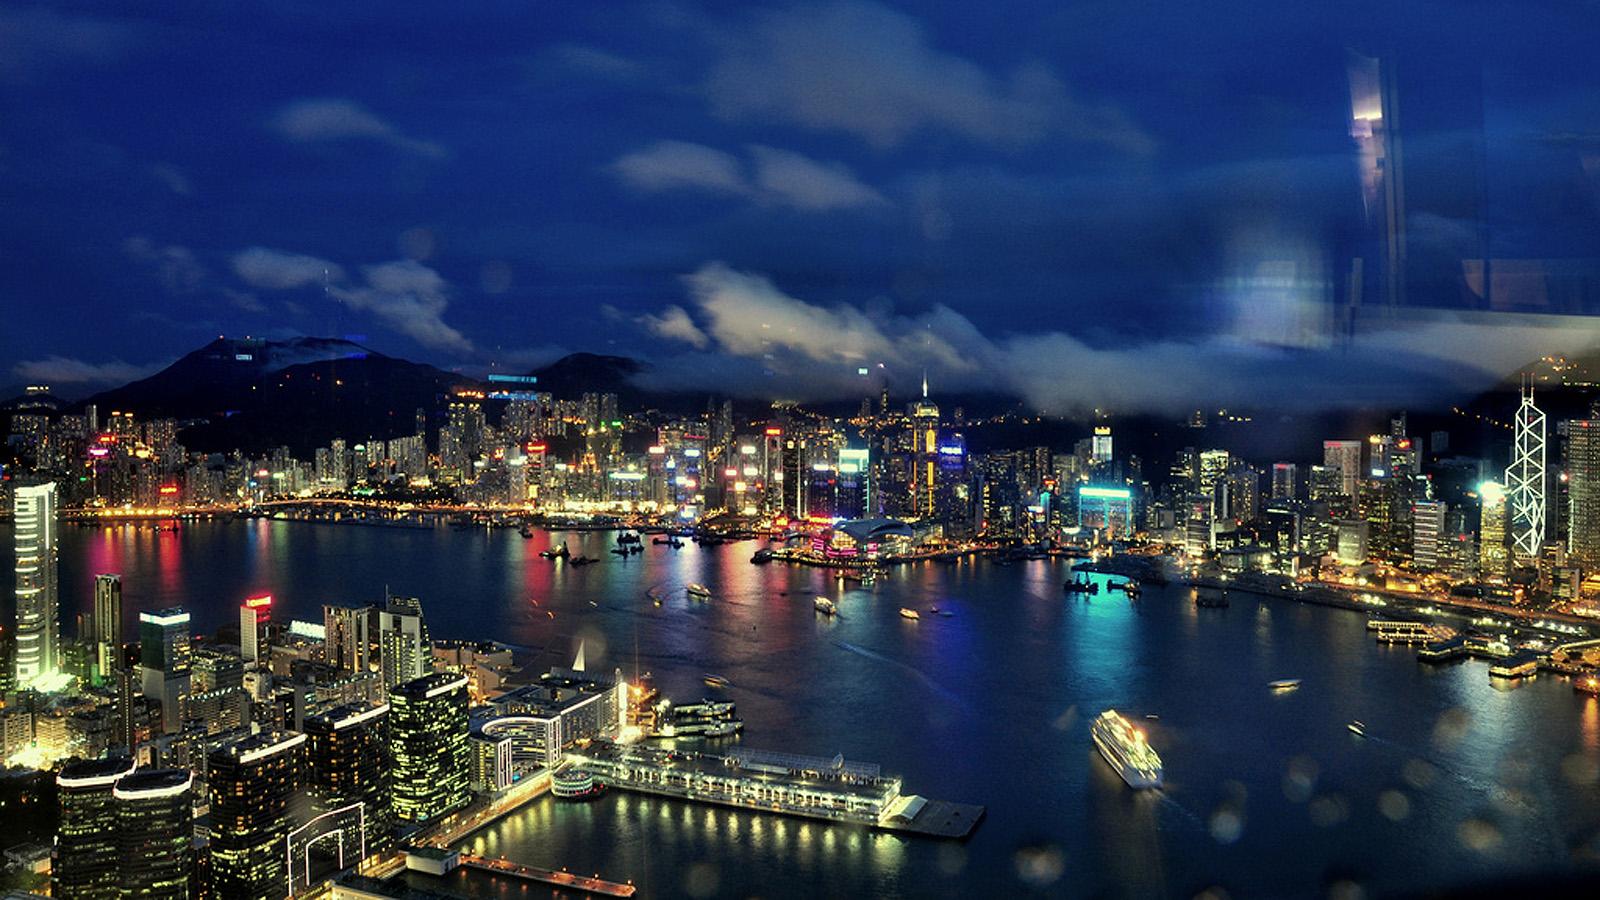 实战干货
:美食在左手，风景在右手，带你领略香港独特历史文化